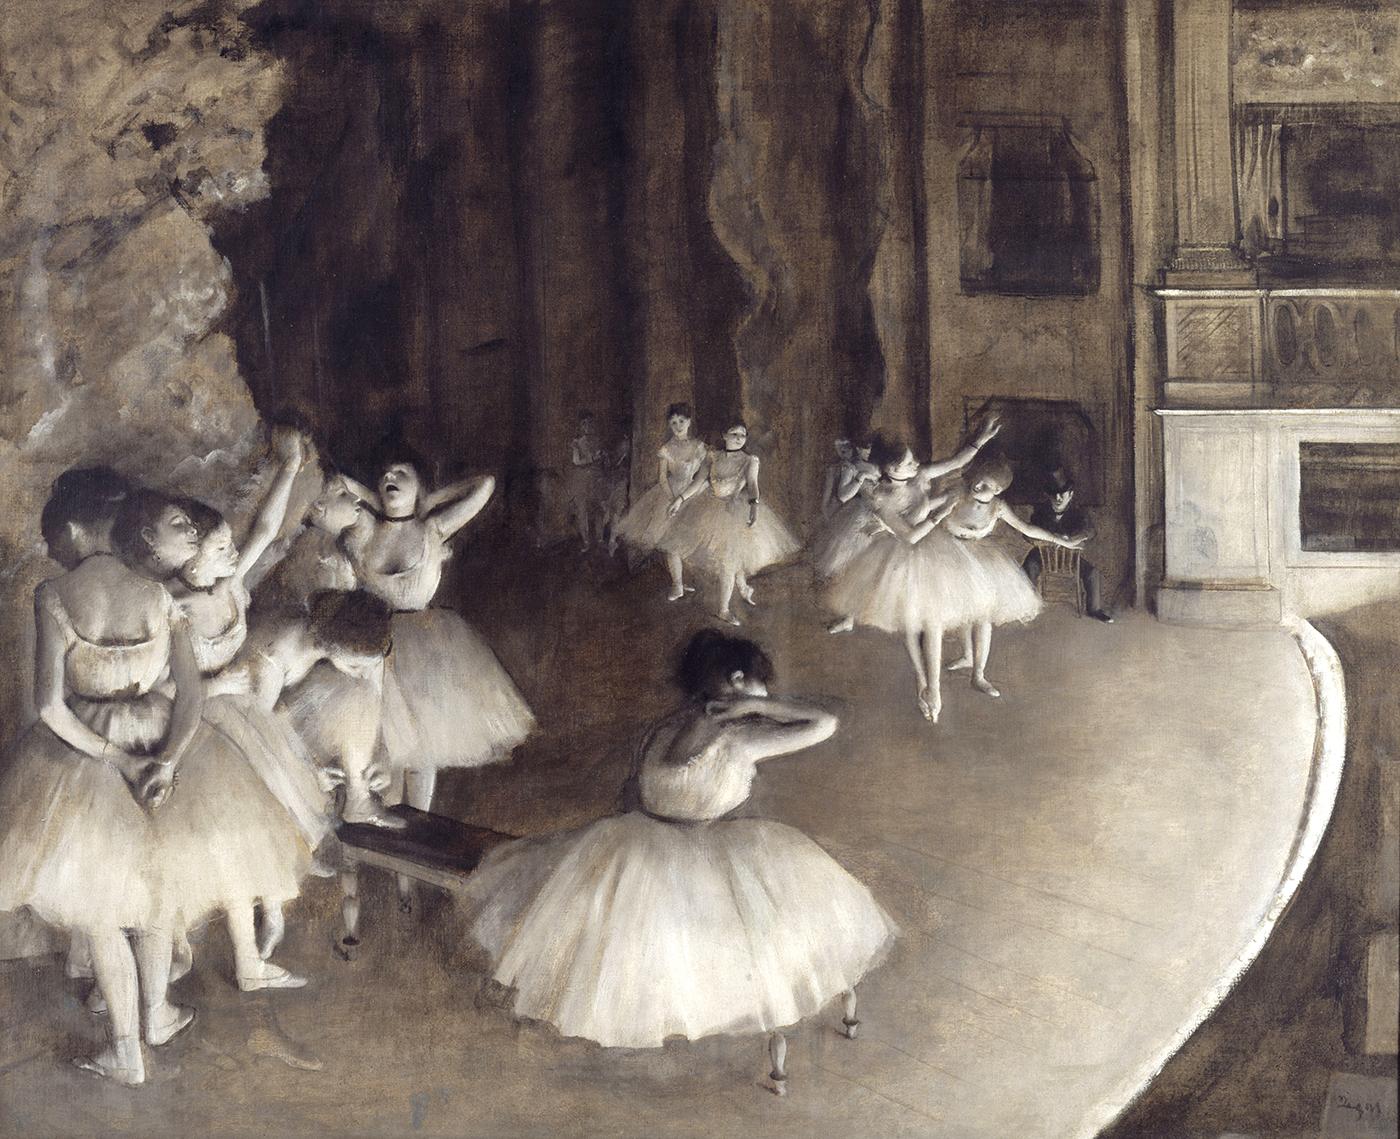 Répétition d'un ballet sur la scène.